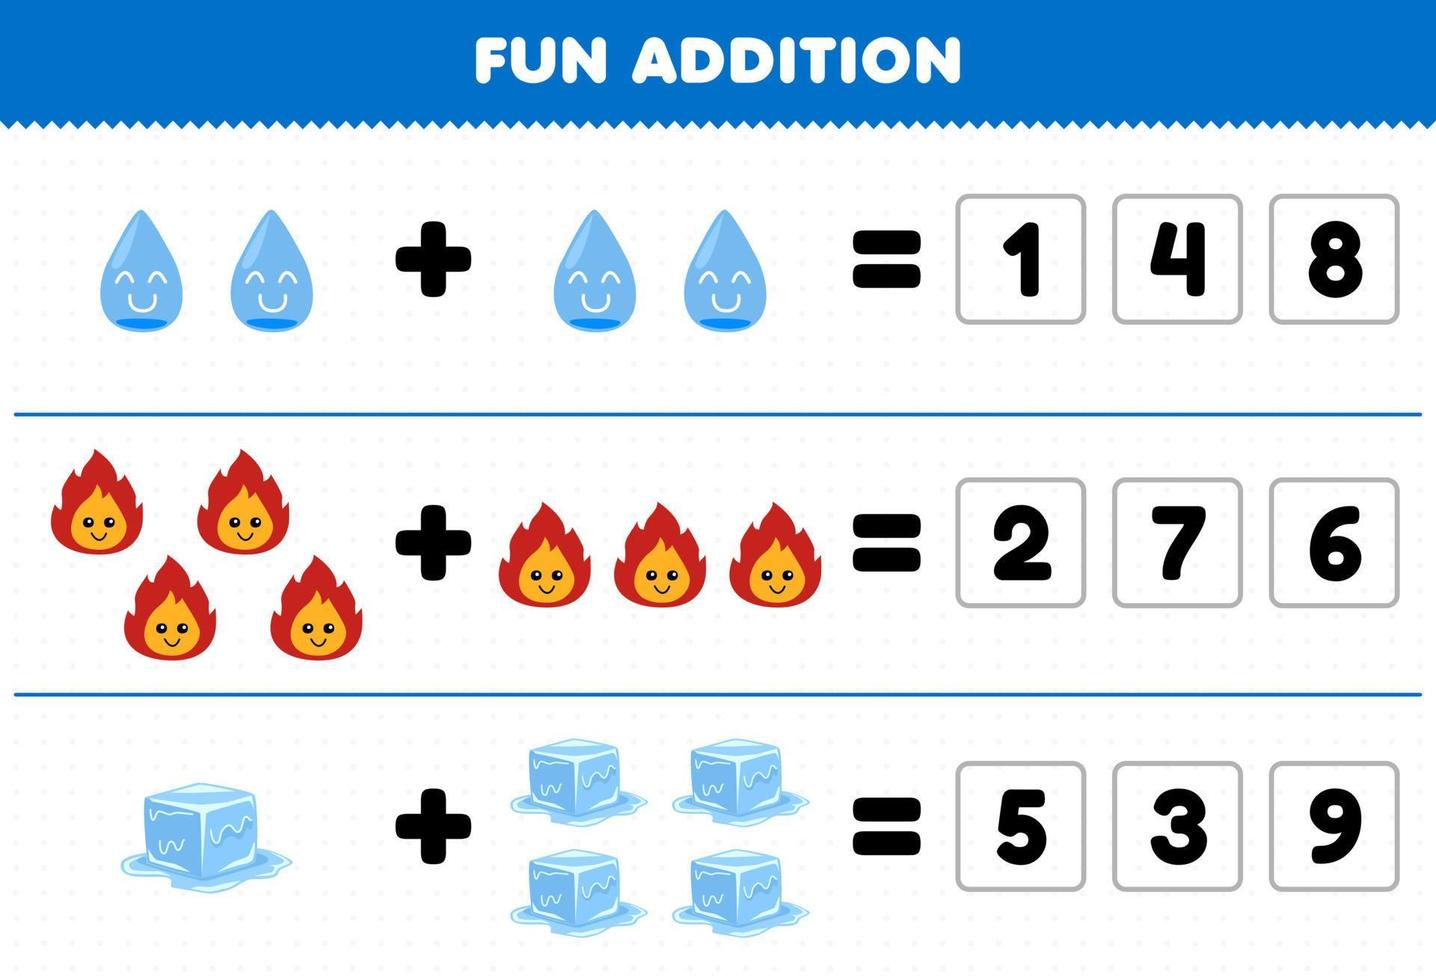 jeu éducatif pour les enfants ajout amusant en devinant le nombre correct de dessin animé mignon eau feu glace feuille de travail nature imprimable vecteur